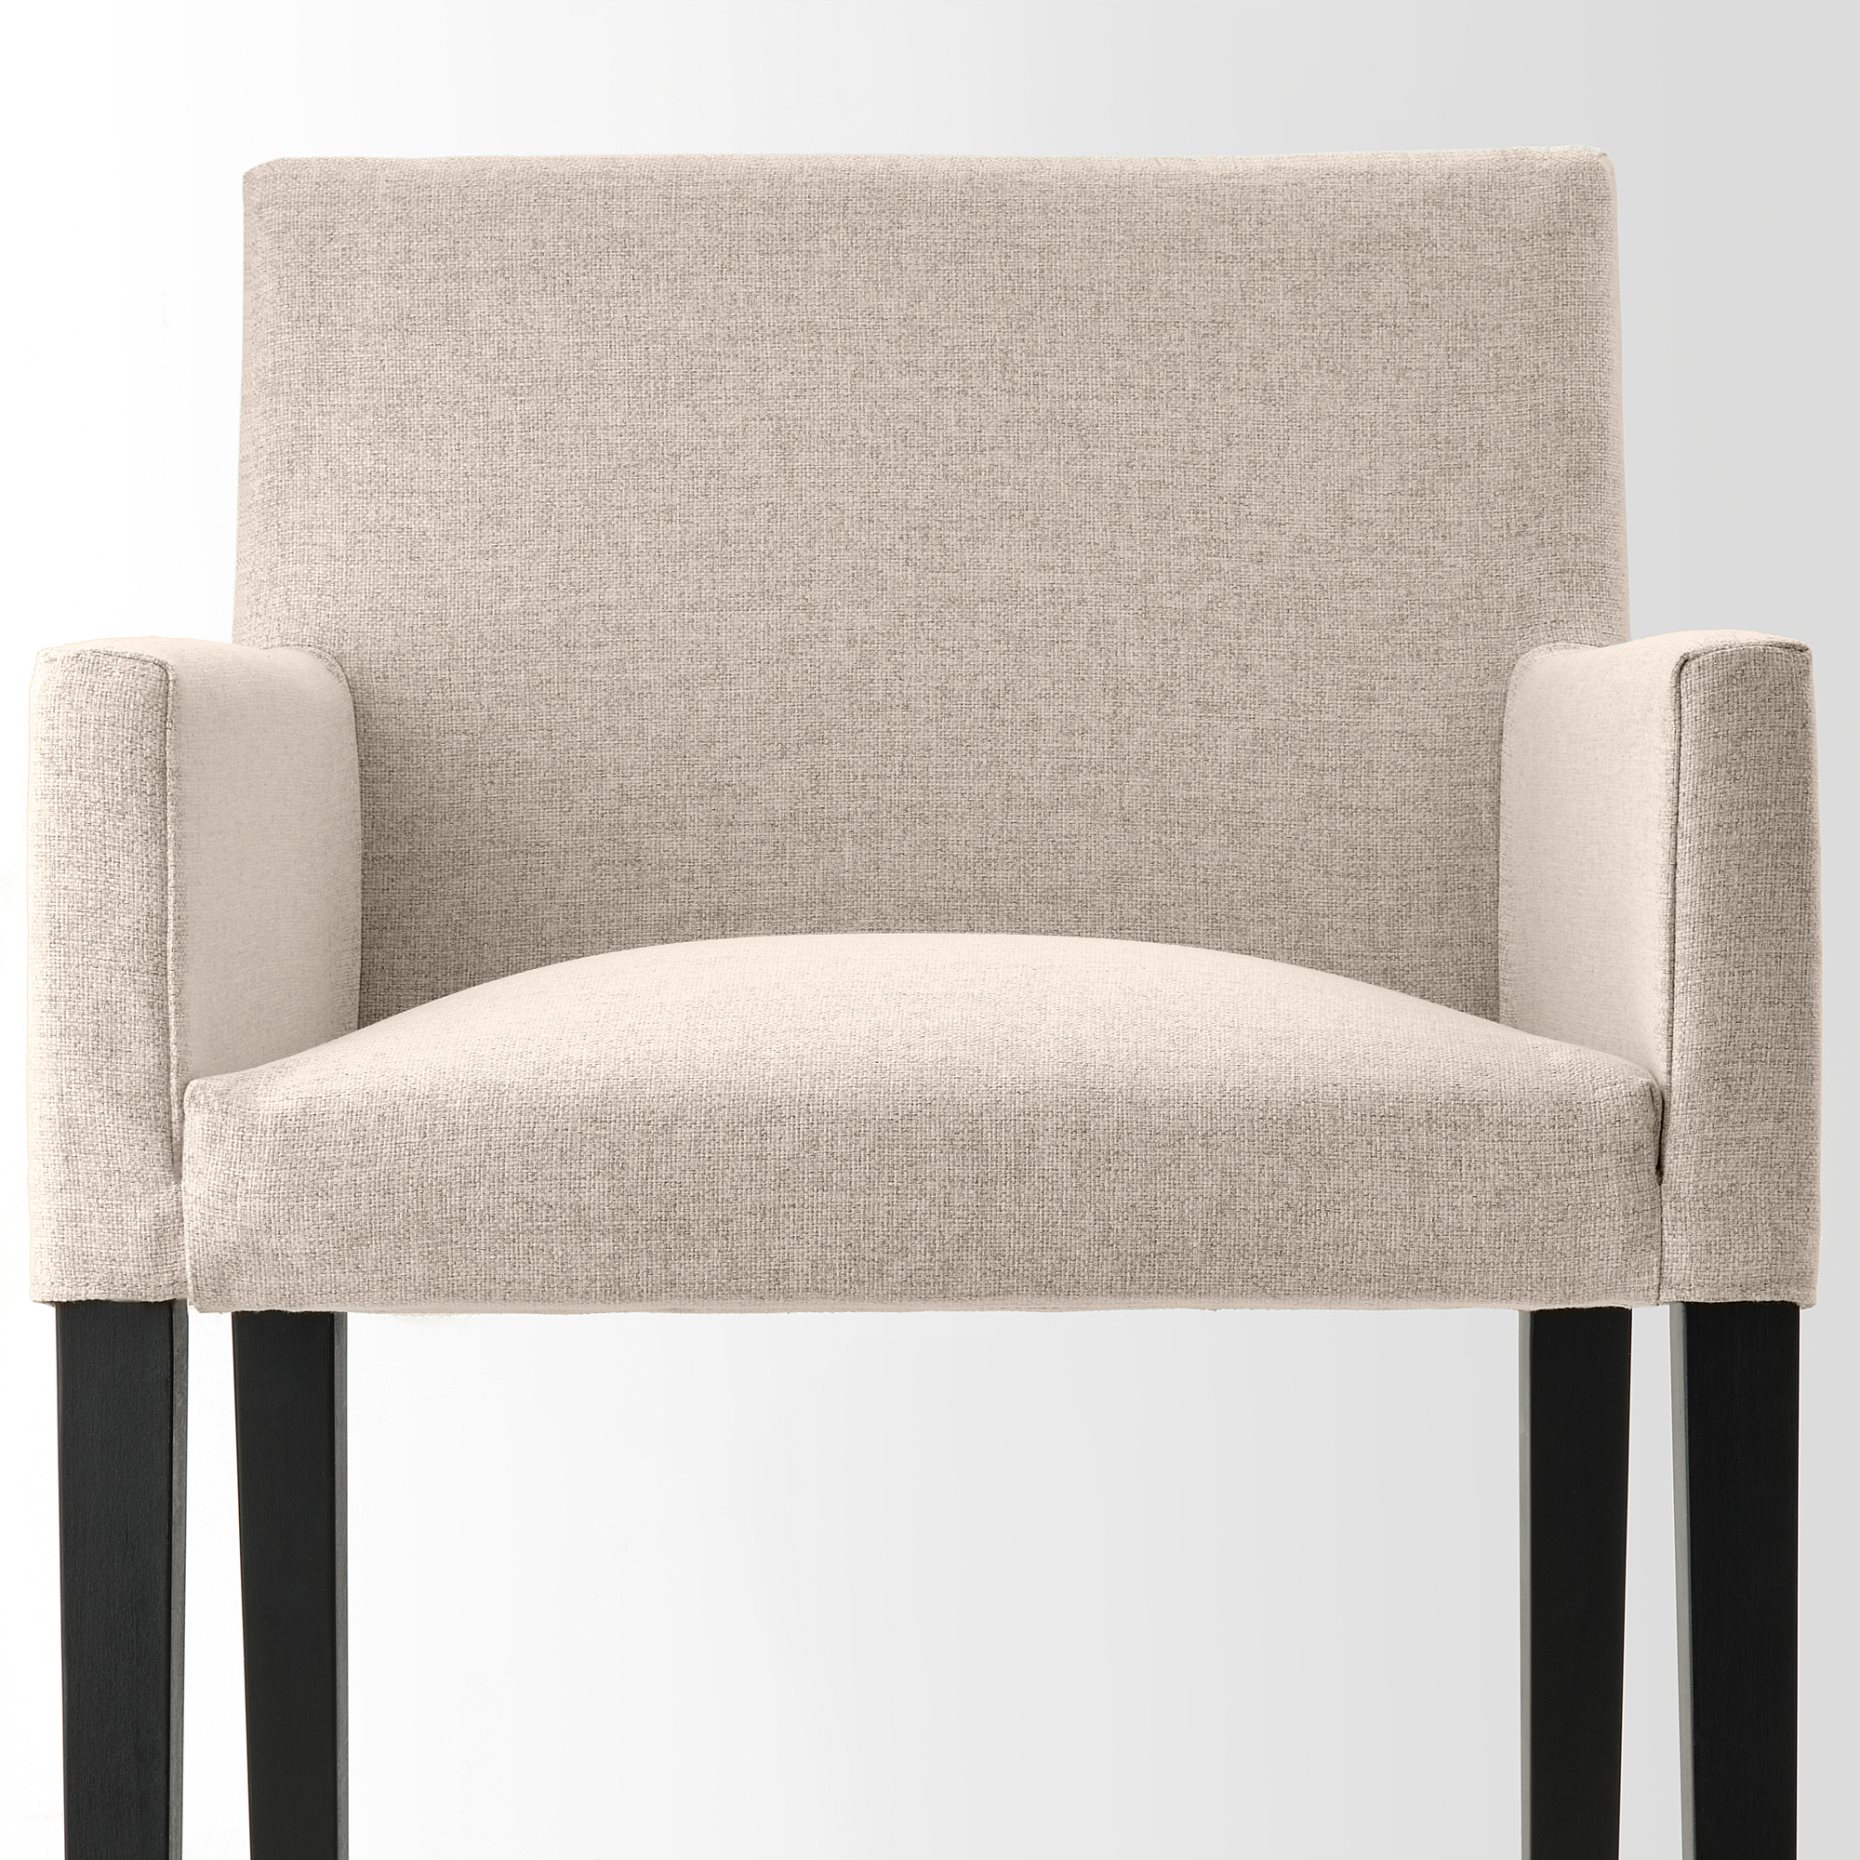 MÅRENÄS, chair with armrests, 795.143.89